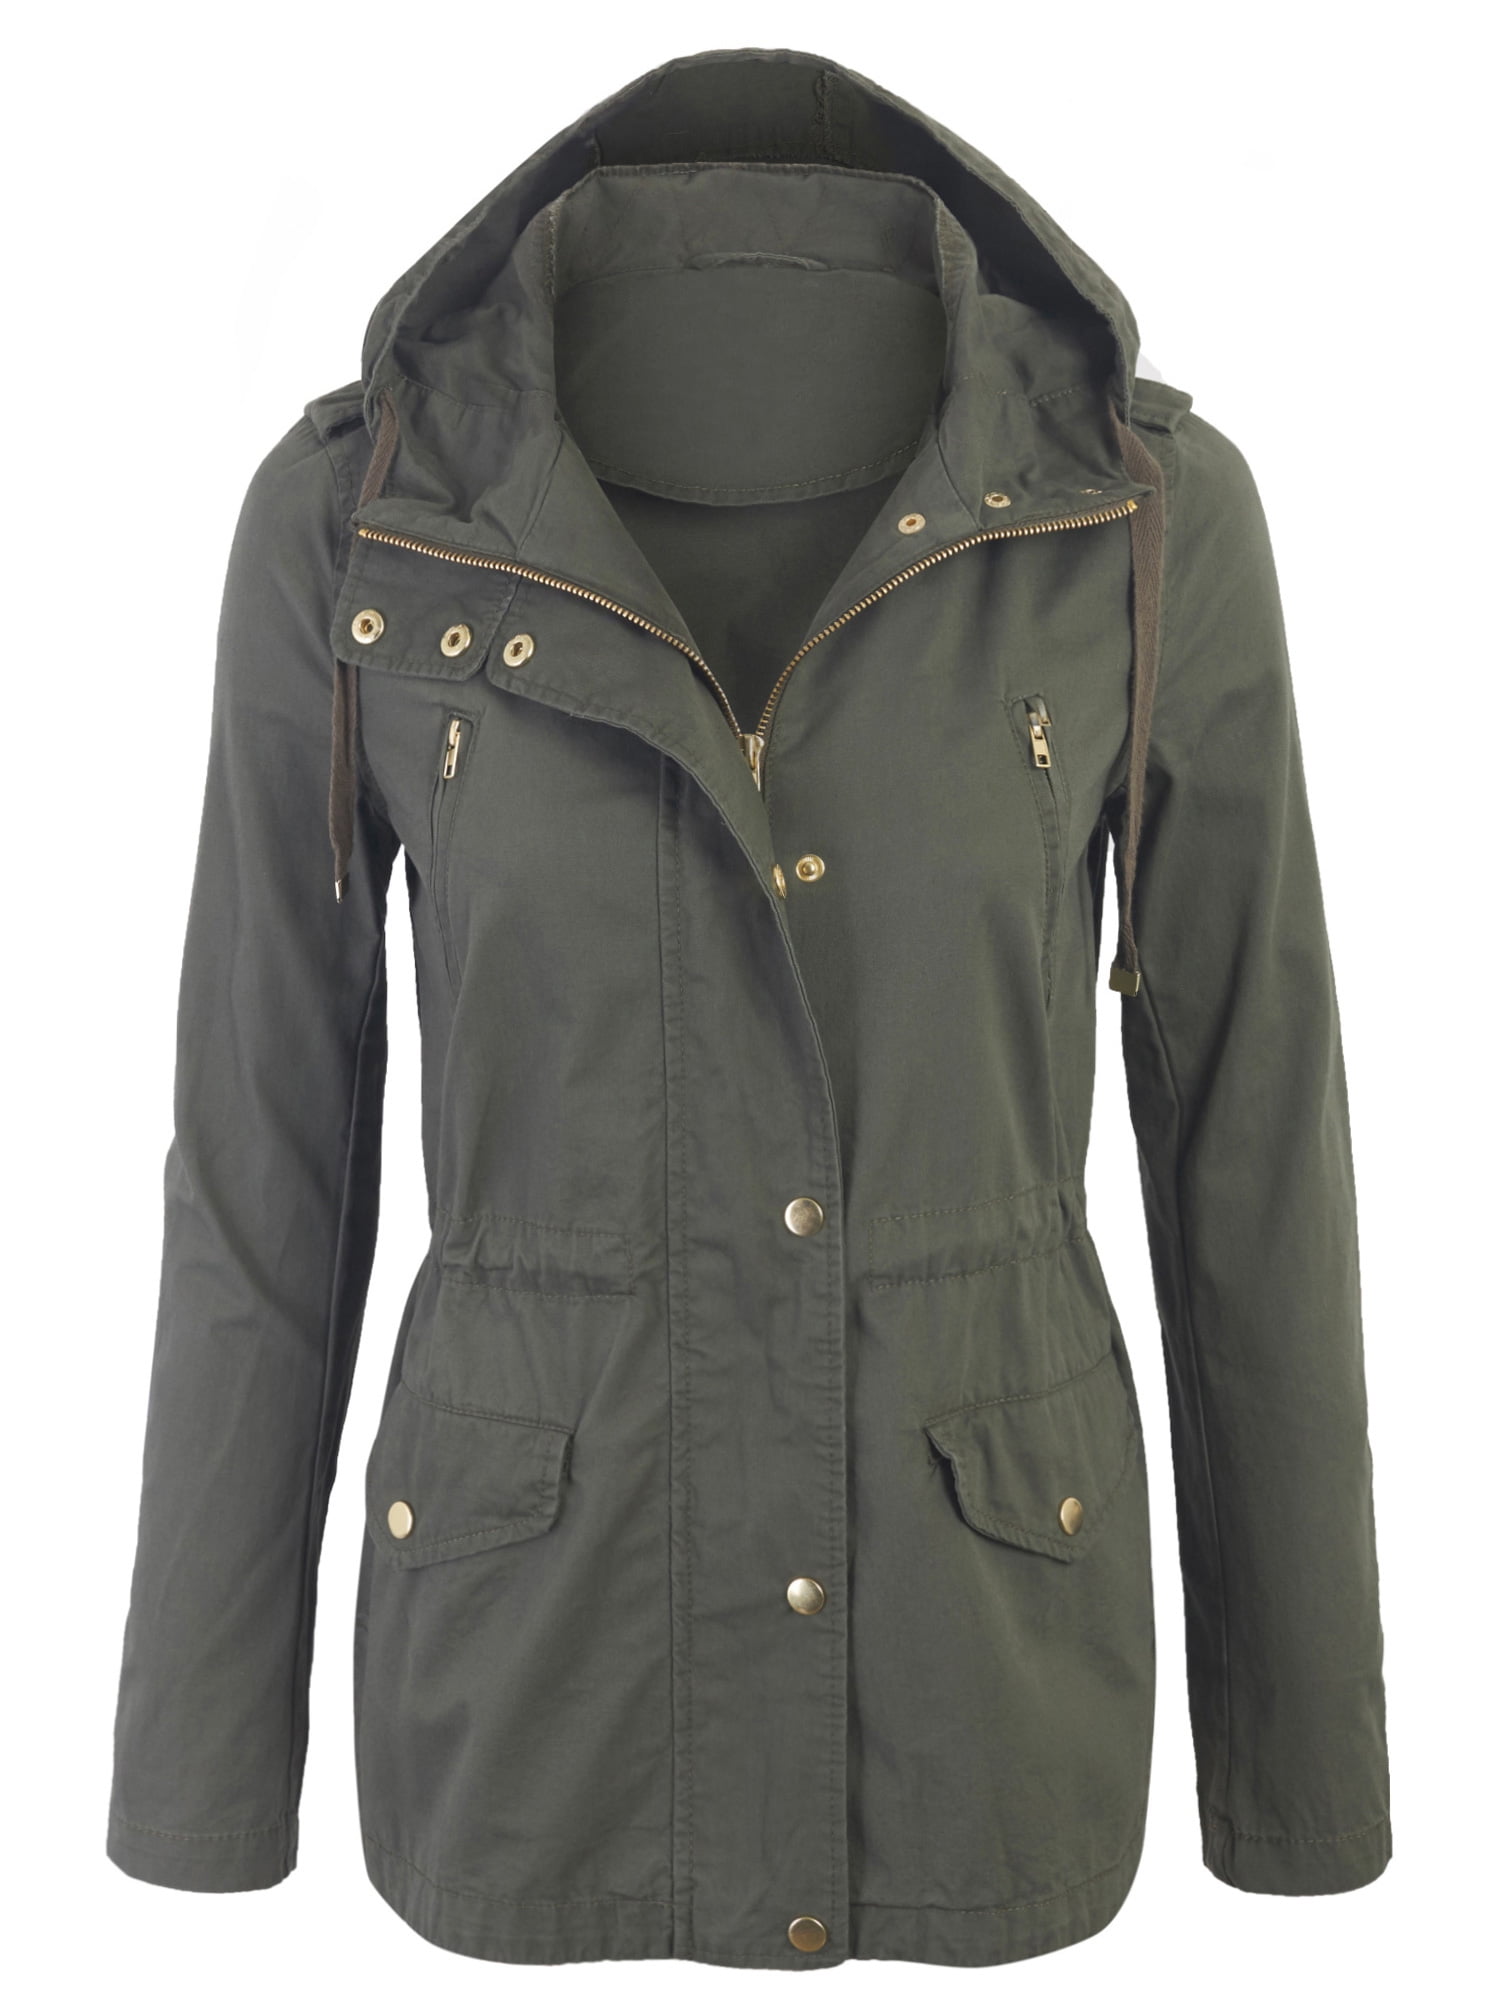 Womens Zip Up Military Anorak Safari Jacket with Hoodie - Walmart.com